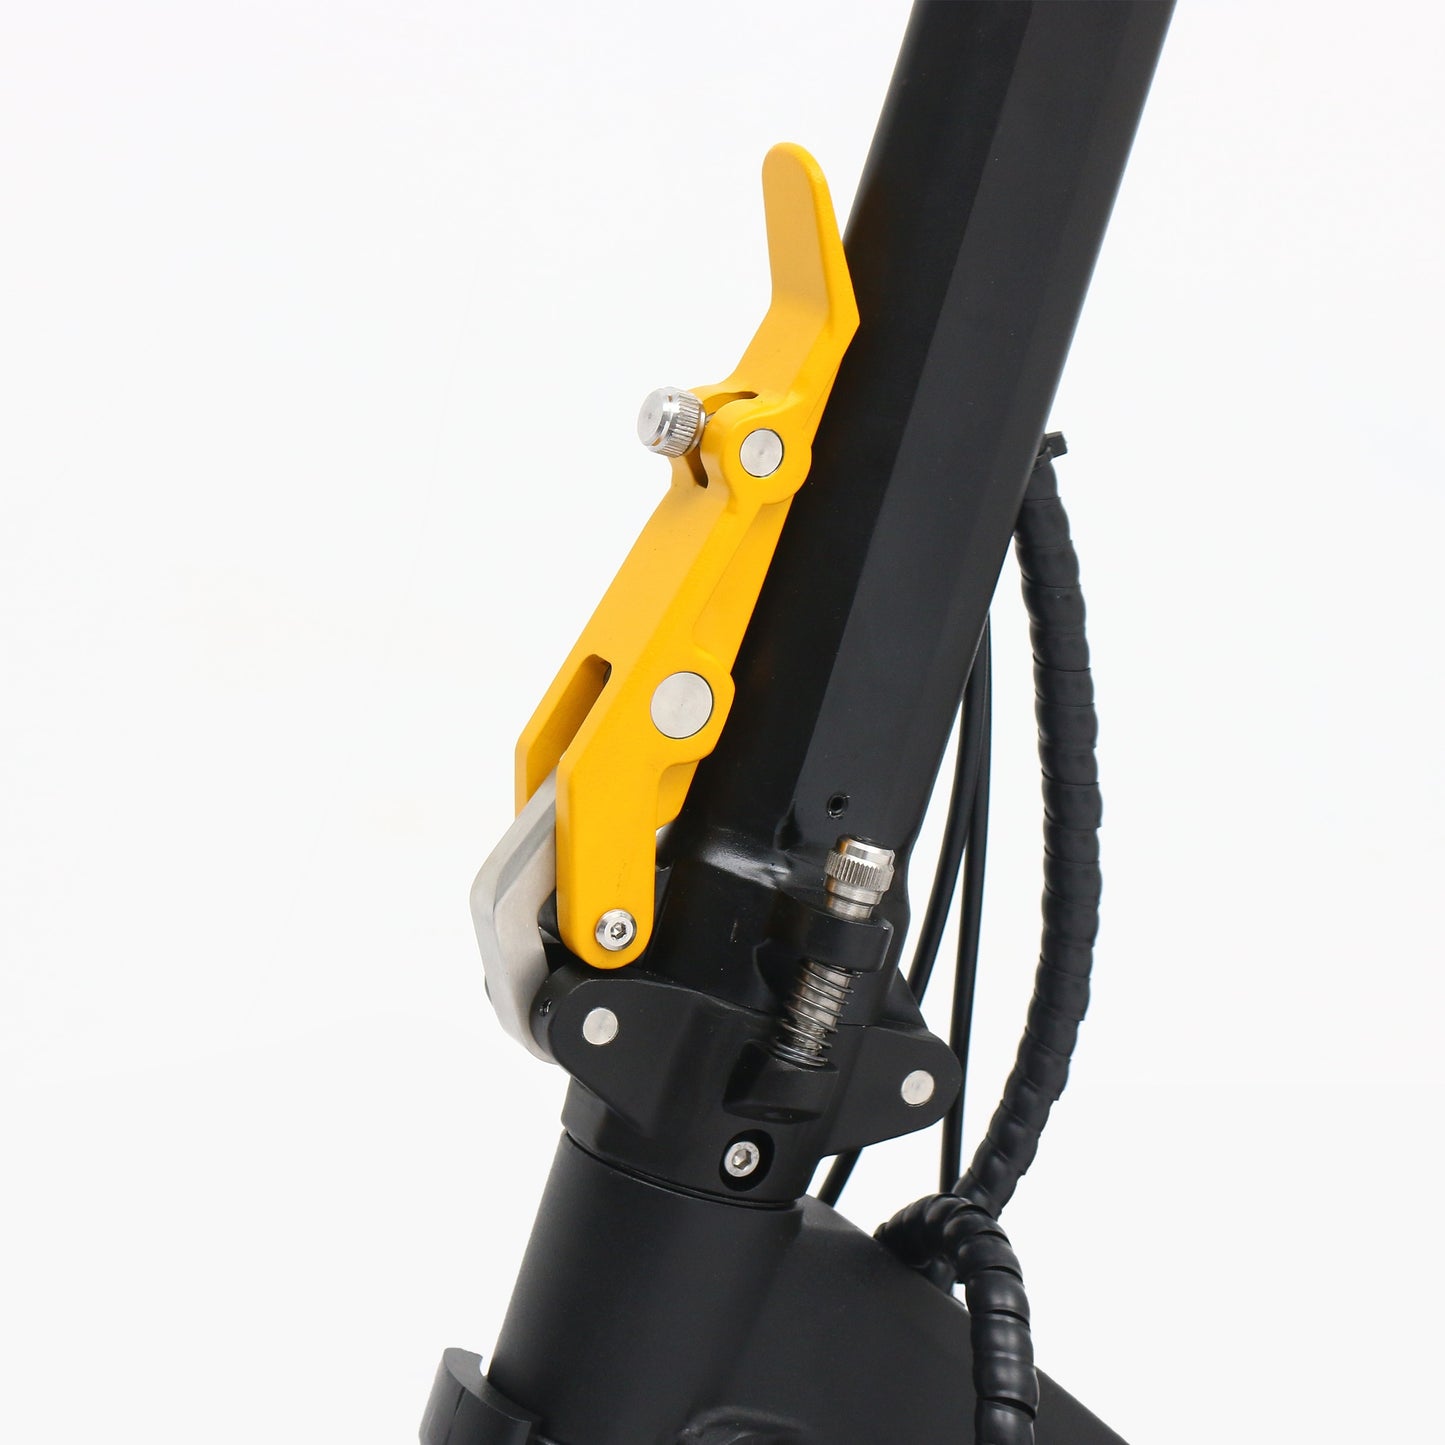 VSETT 10+ Electric Scooter Folding latch stem